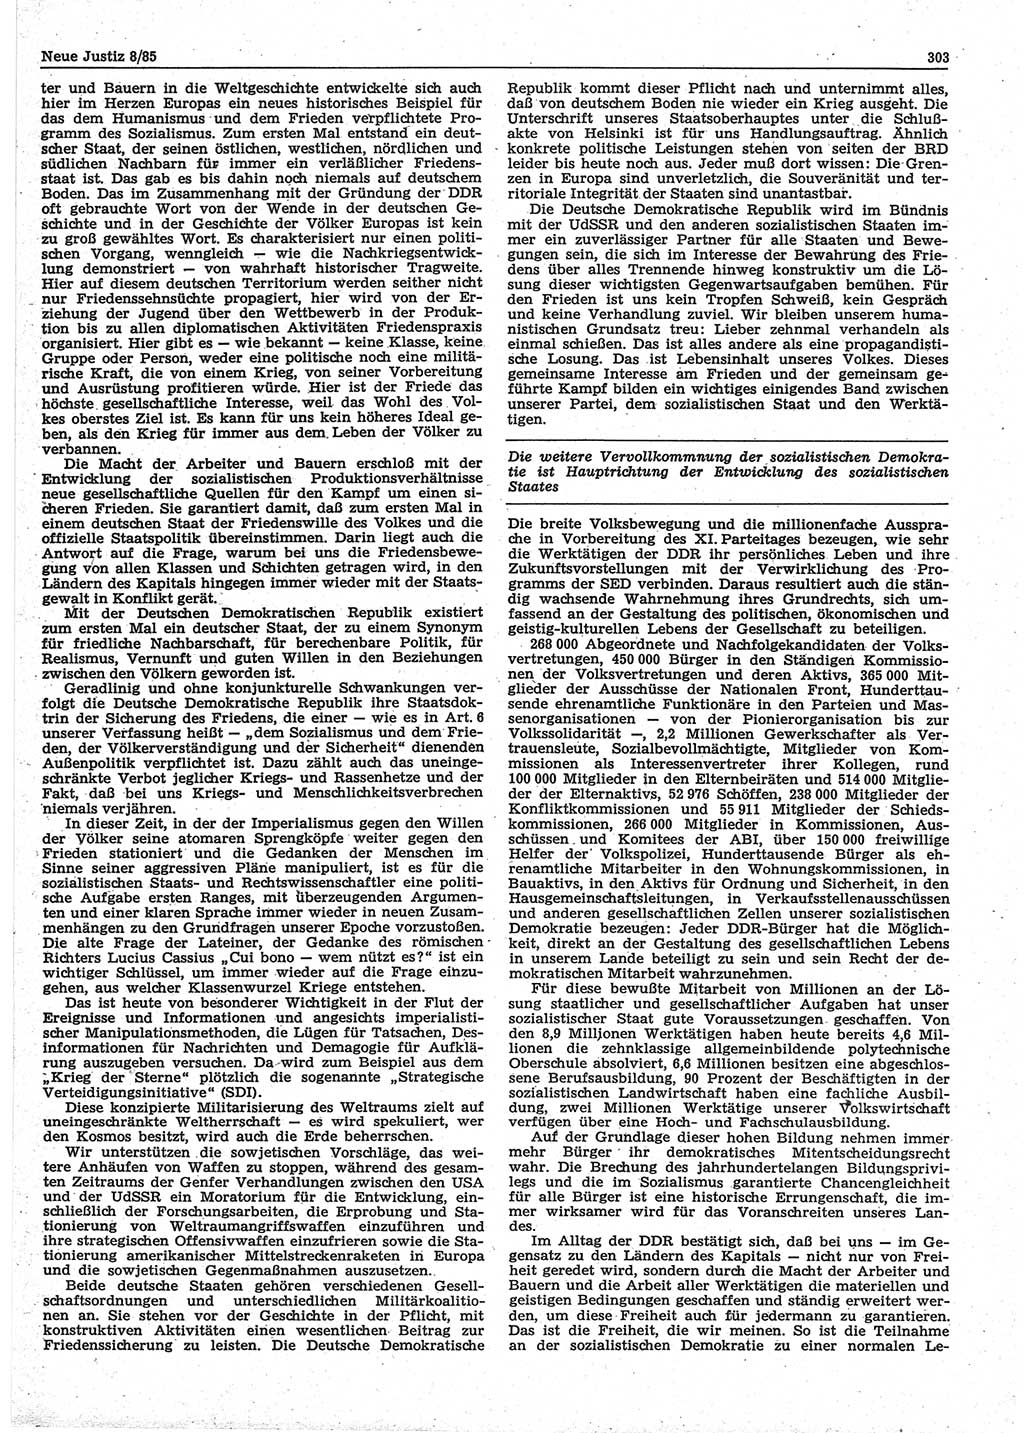 Neue Justiz (NJ), Zeitschrift für sozialistisches Recht und Gesetzlichkeit [Deutsche Demokratische Republik (DDR)], 39. Jahrgang 1985, Seite 303 (NJ DDR 1985, S. 303)